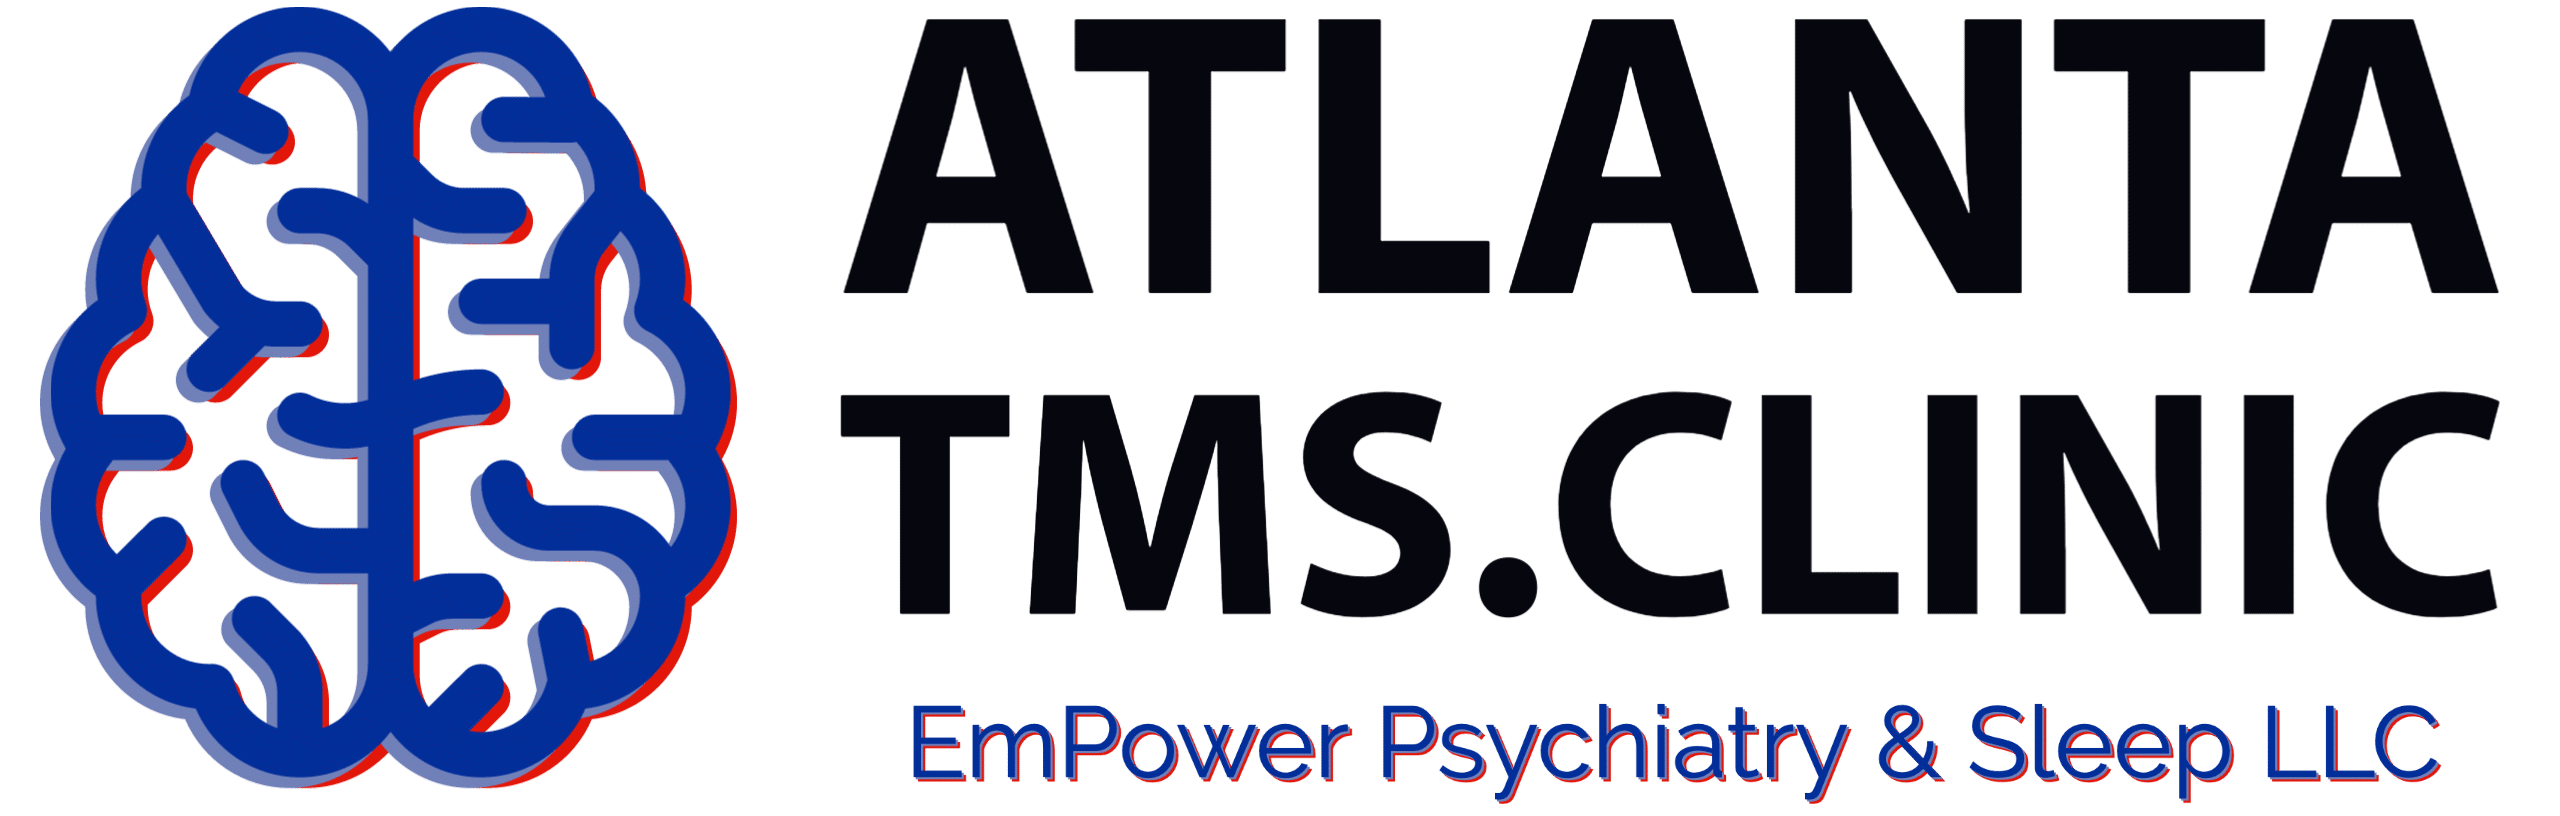 Psychiatrist in Greater Atlanta Logo